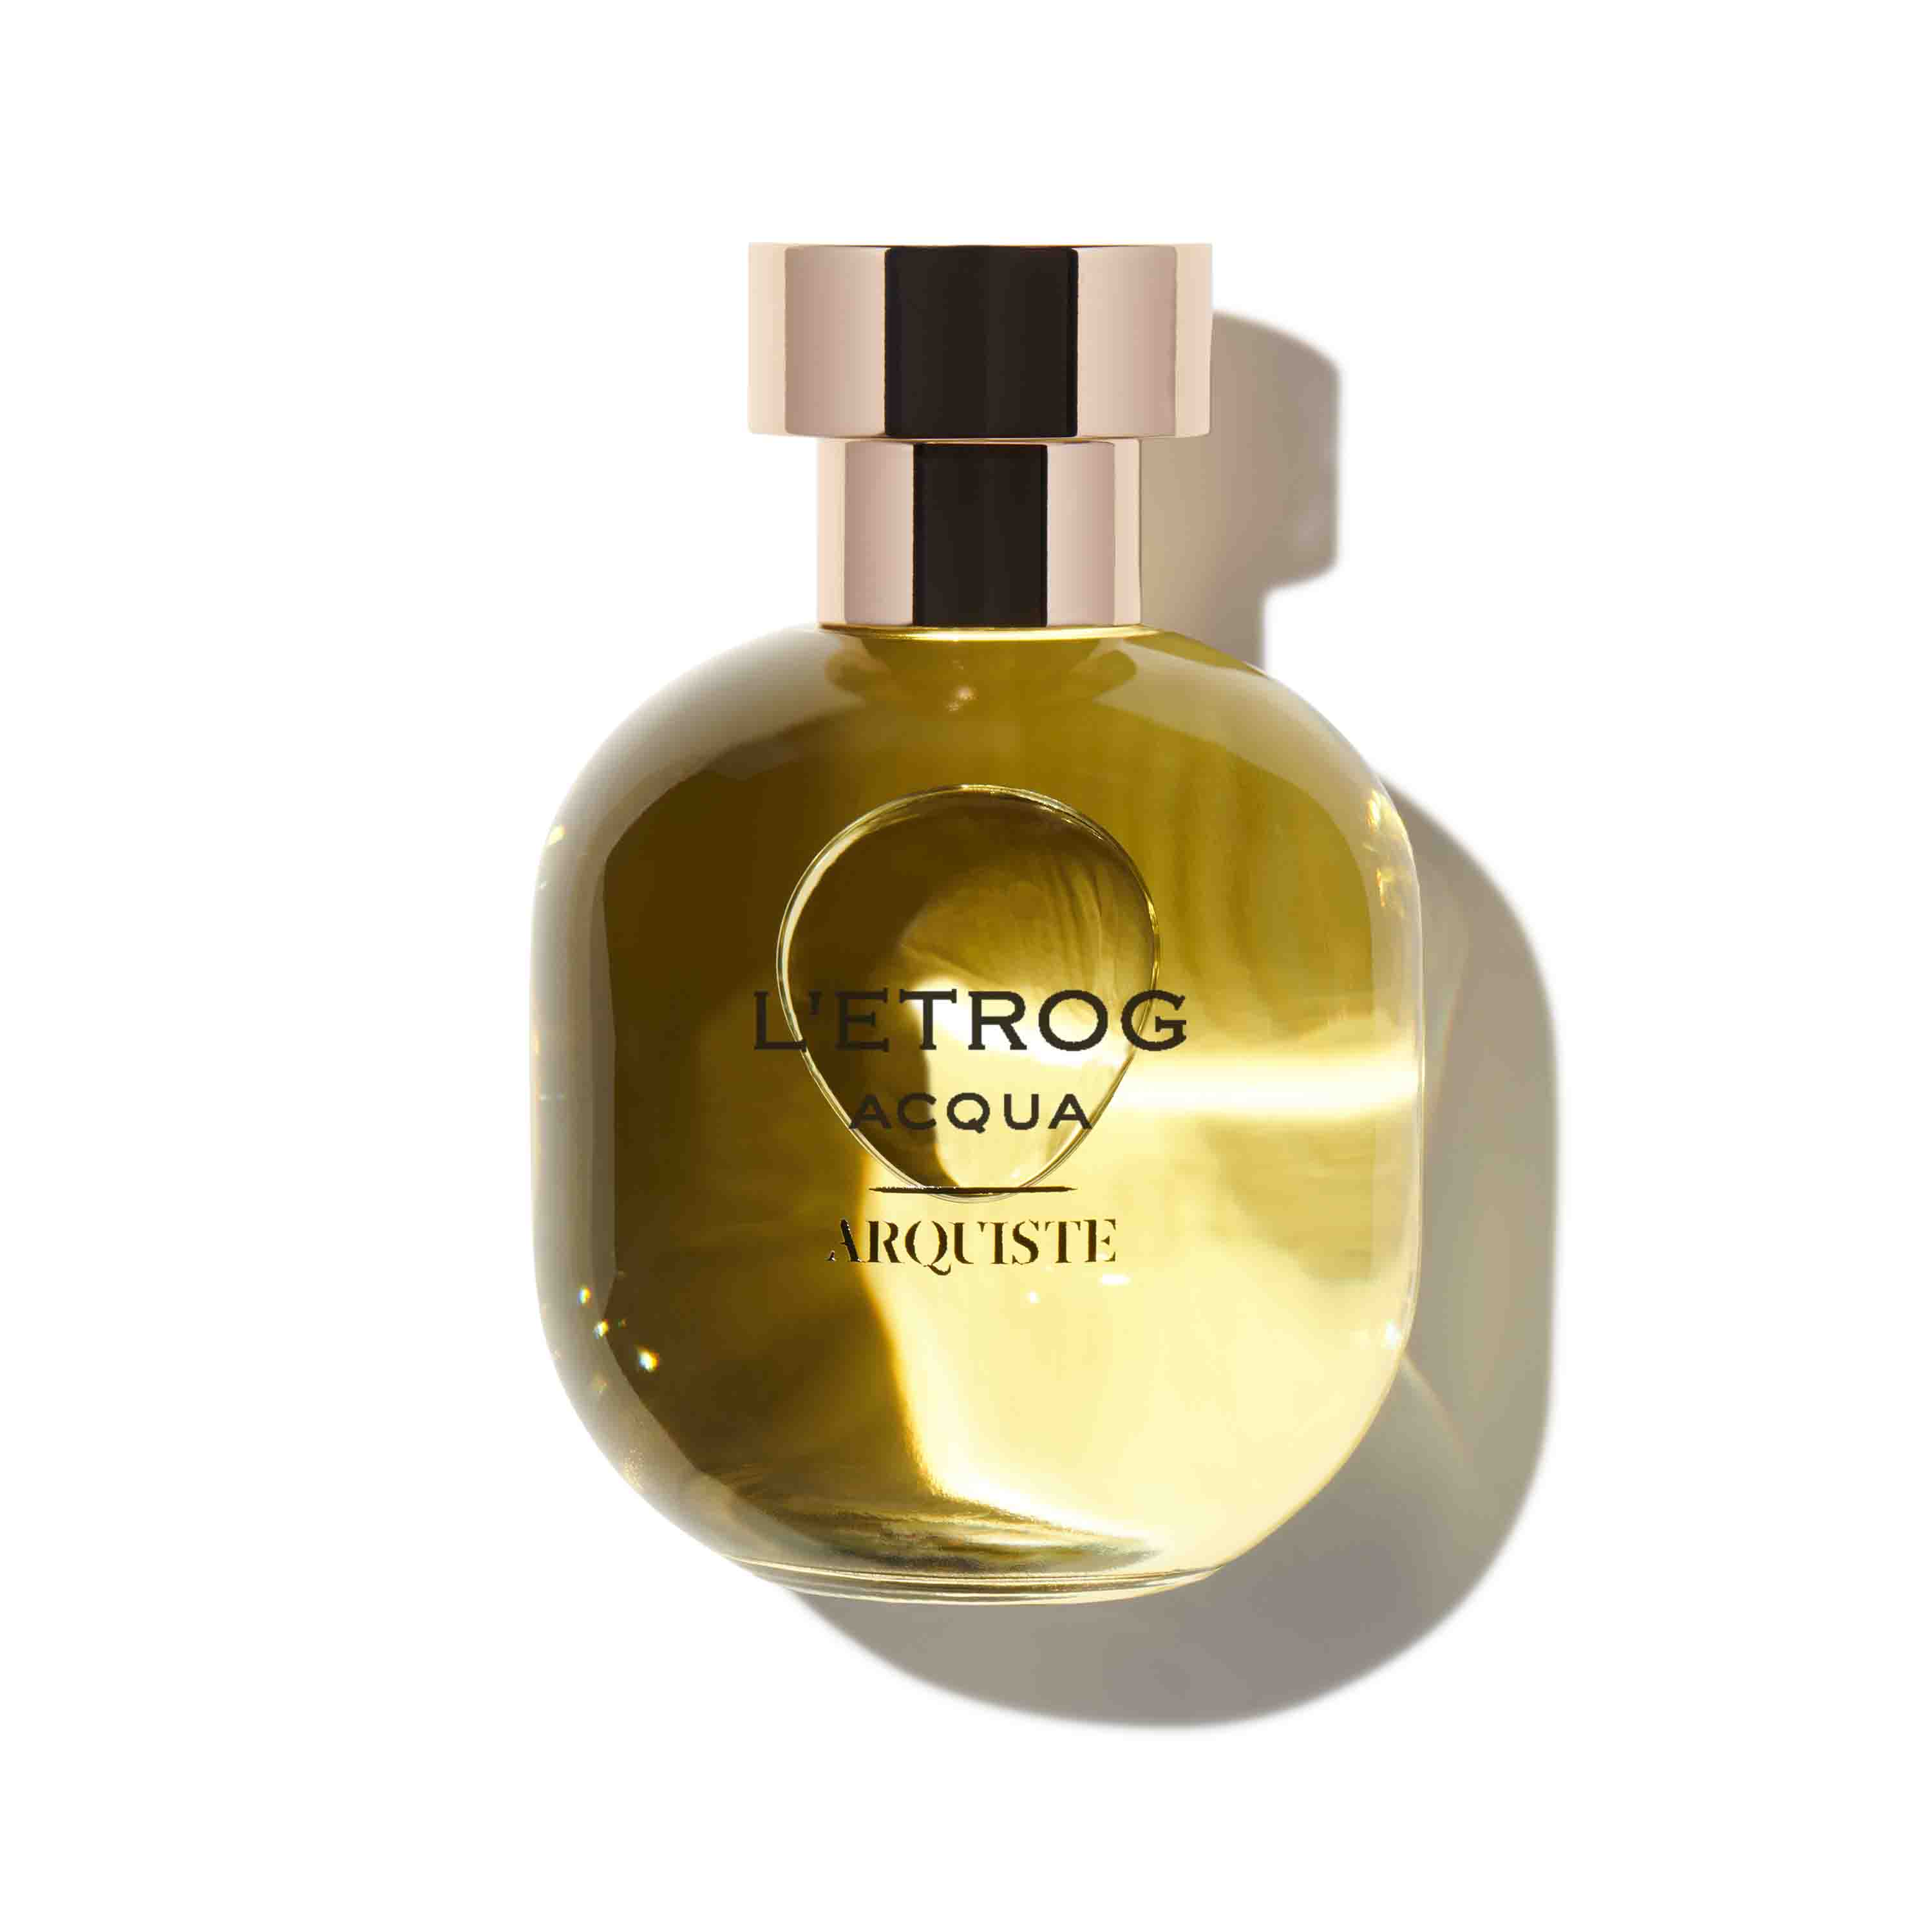 L'Etrog Acqua by Arquiste, 100ml Eau de Parfum